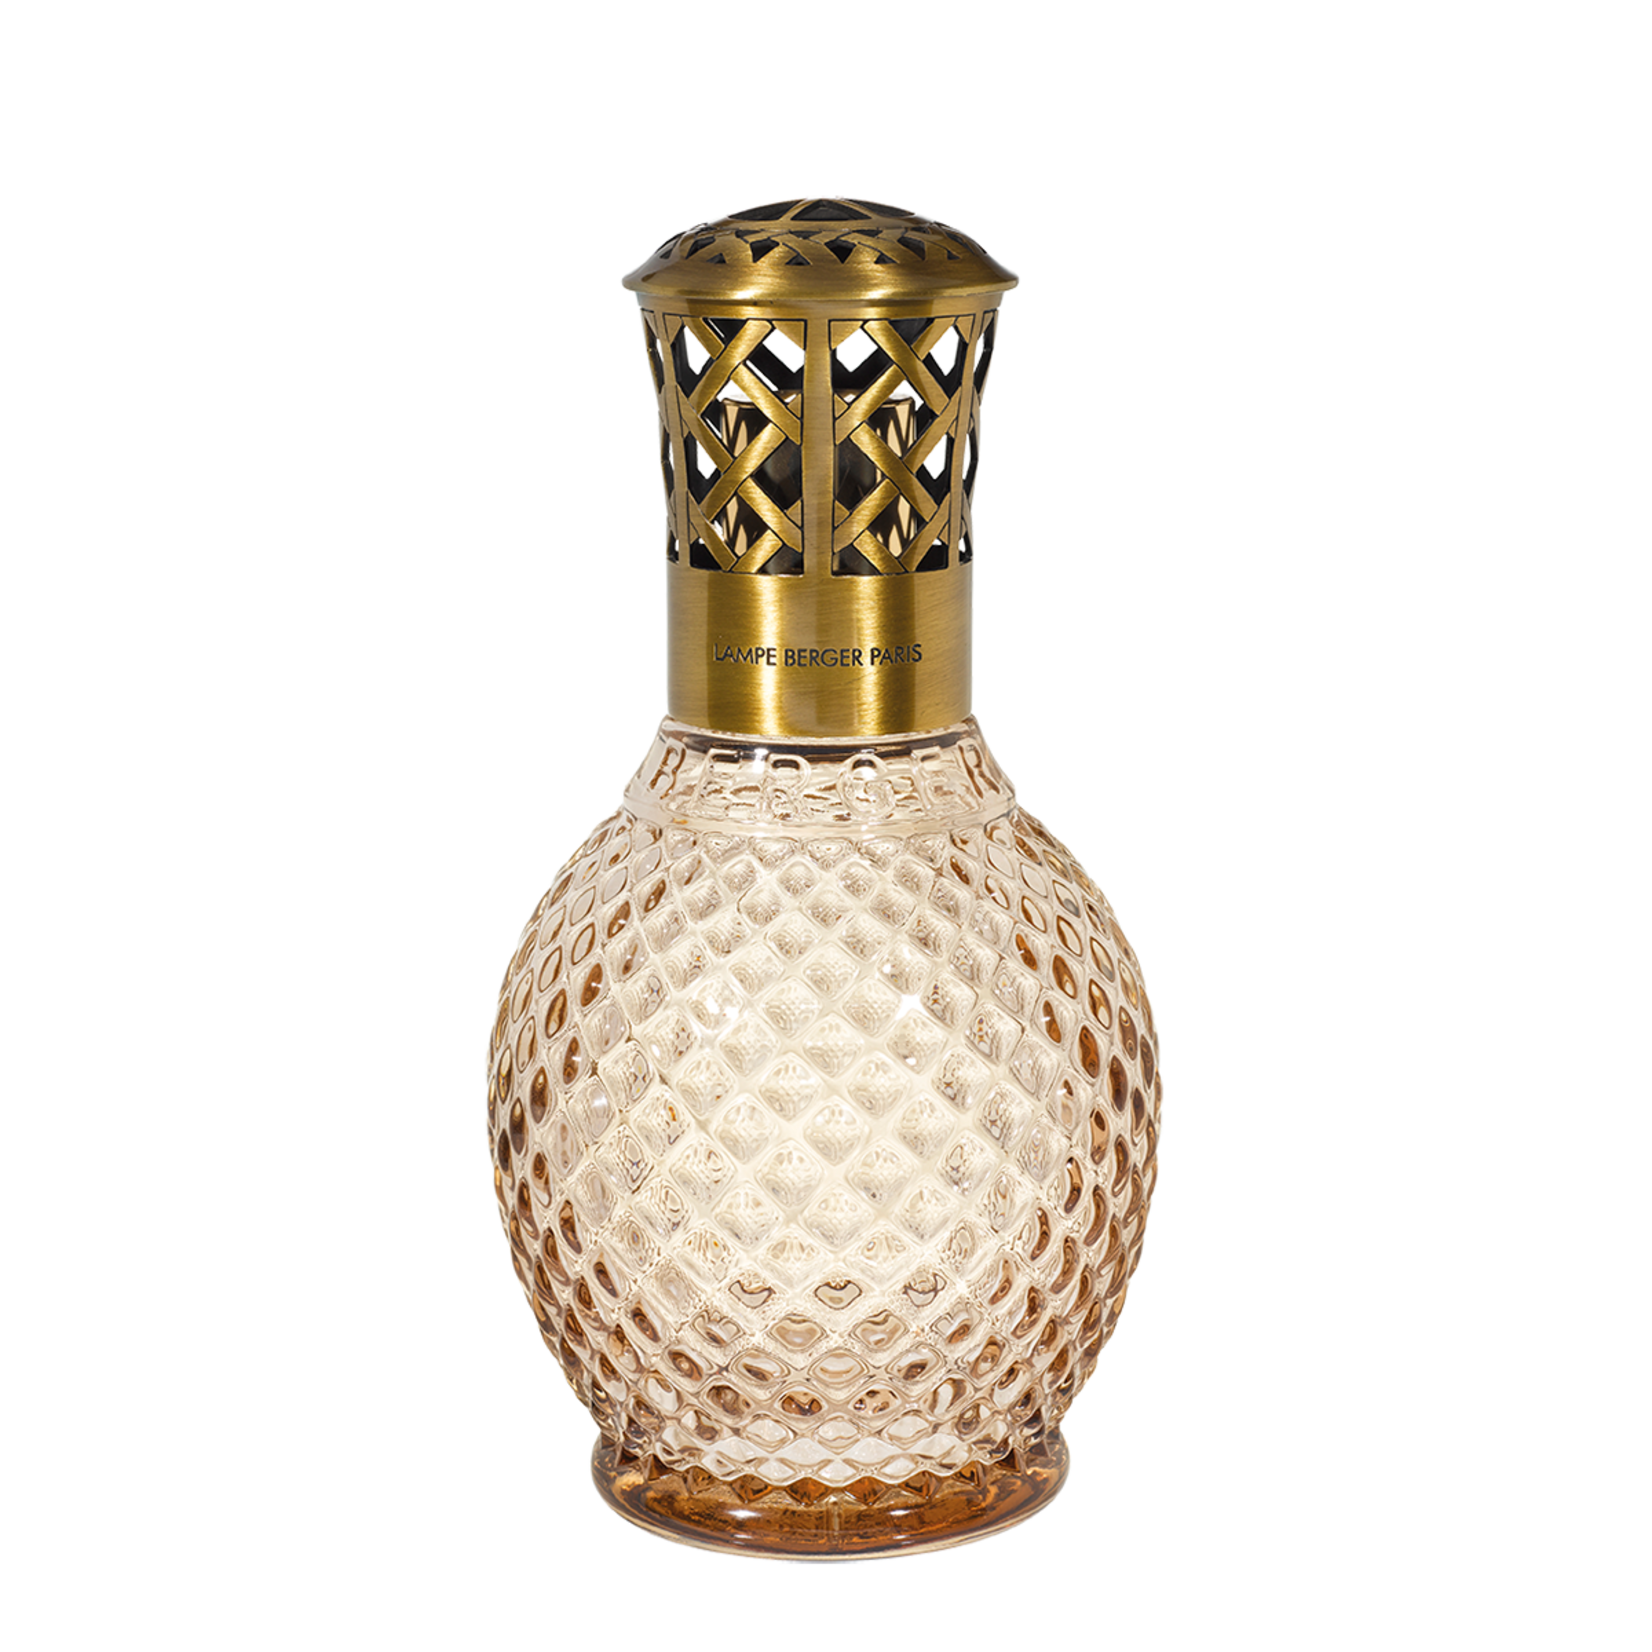 Arys (Perfumes) & Lampe Berger 1930 — Perfumes